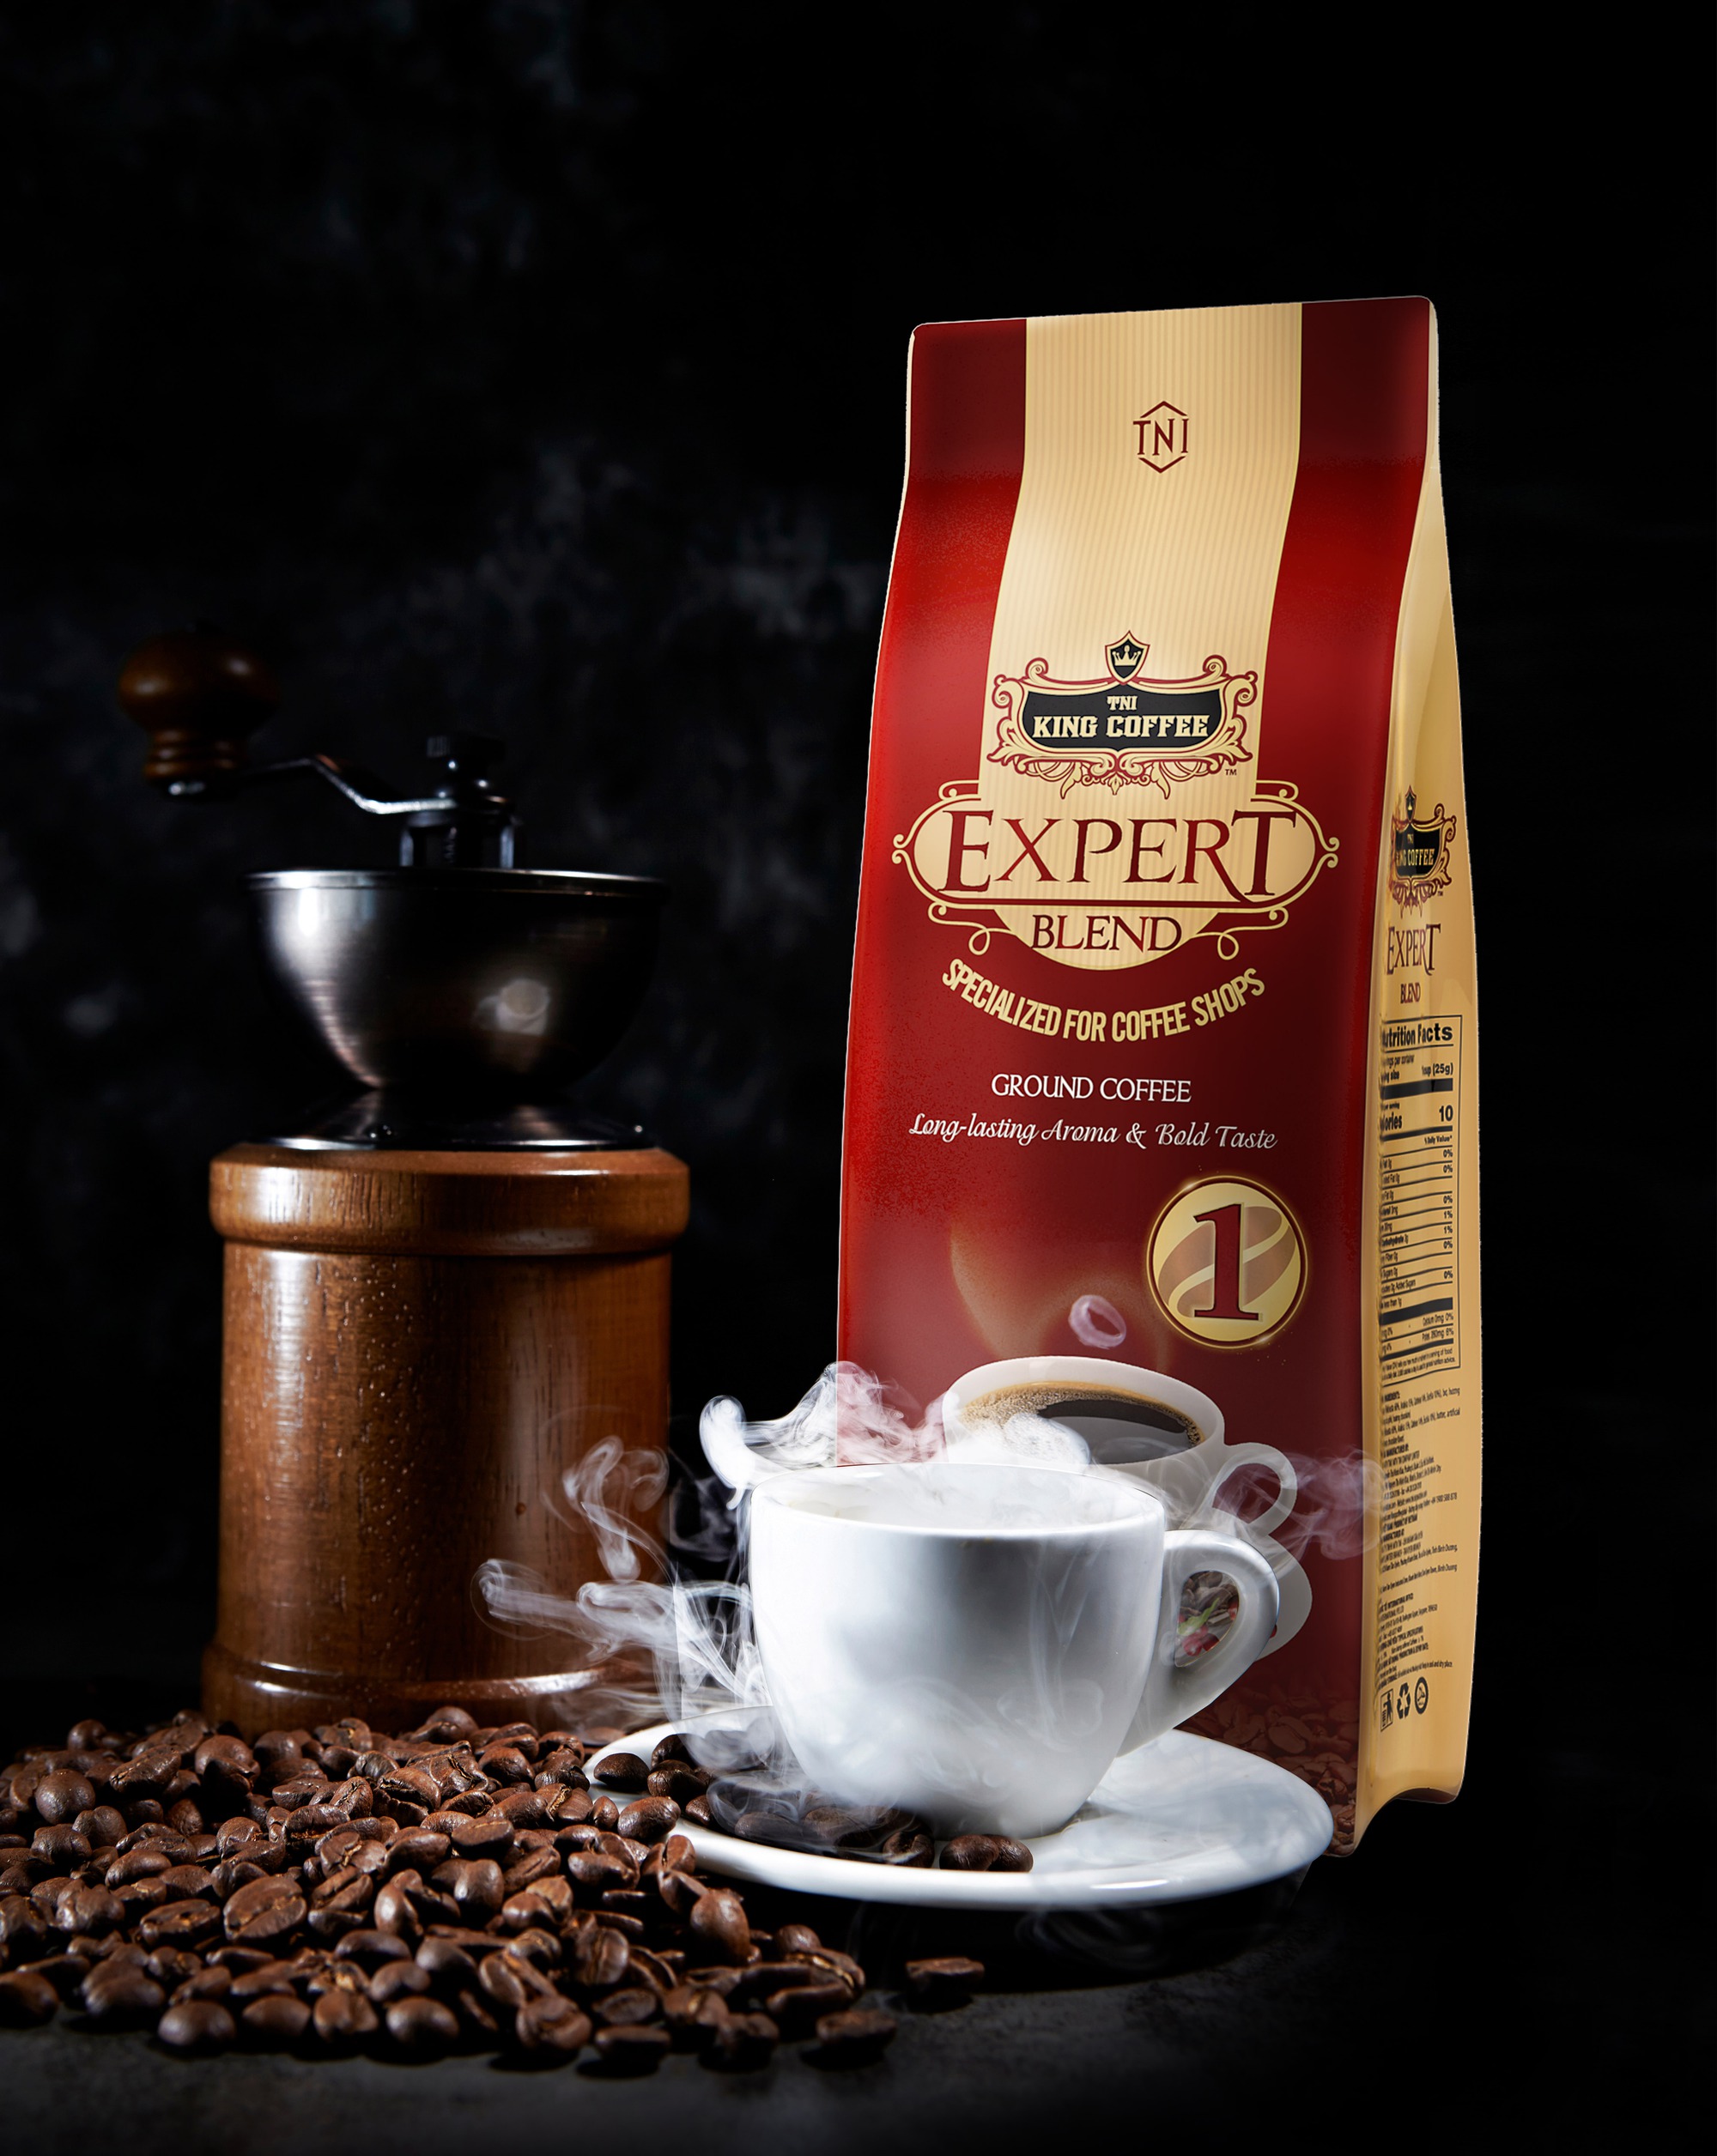 Expert blend: Thưởng thức sự tinh tế trong từng hạt cà phê và tìm hiểu kỹ thuật pha chế đẳng cấp nhất qua ảnh liên quan đến Expert blend. Với những kiến thức và kinh nghiệm đến từ những chuyên gia hàng đầu, bạn sẽ cảm nhận được sự khác biệt và đặc biệt trong mỗi tách cà phê.